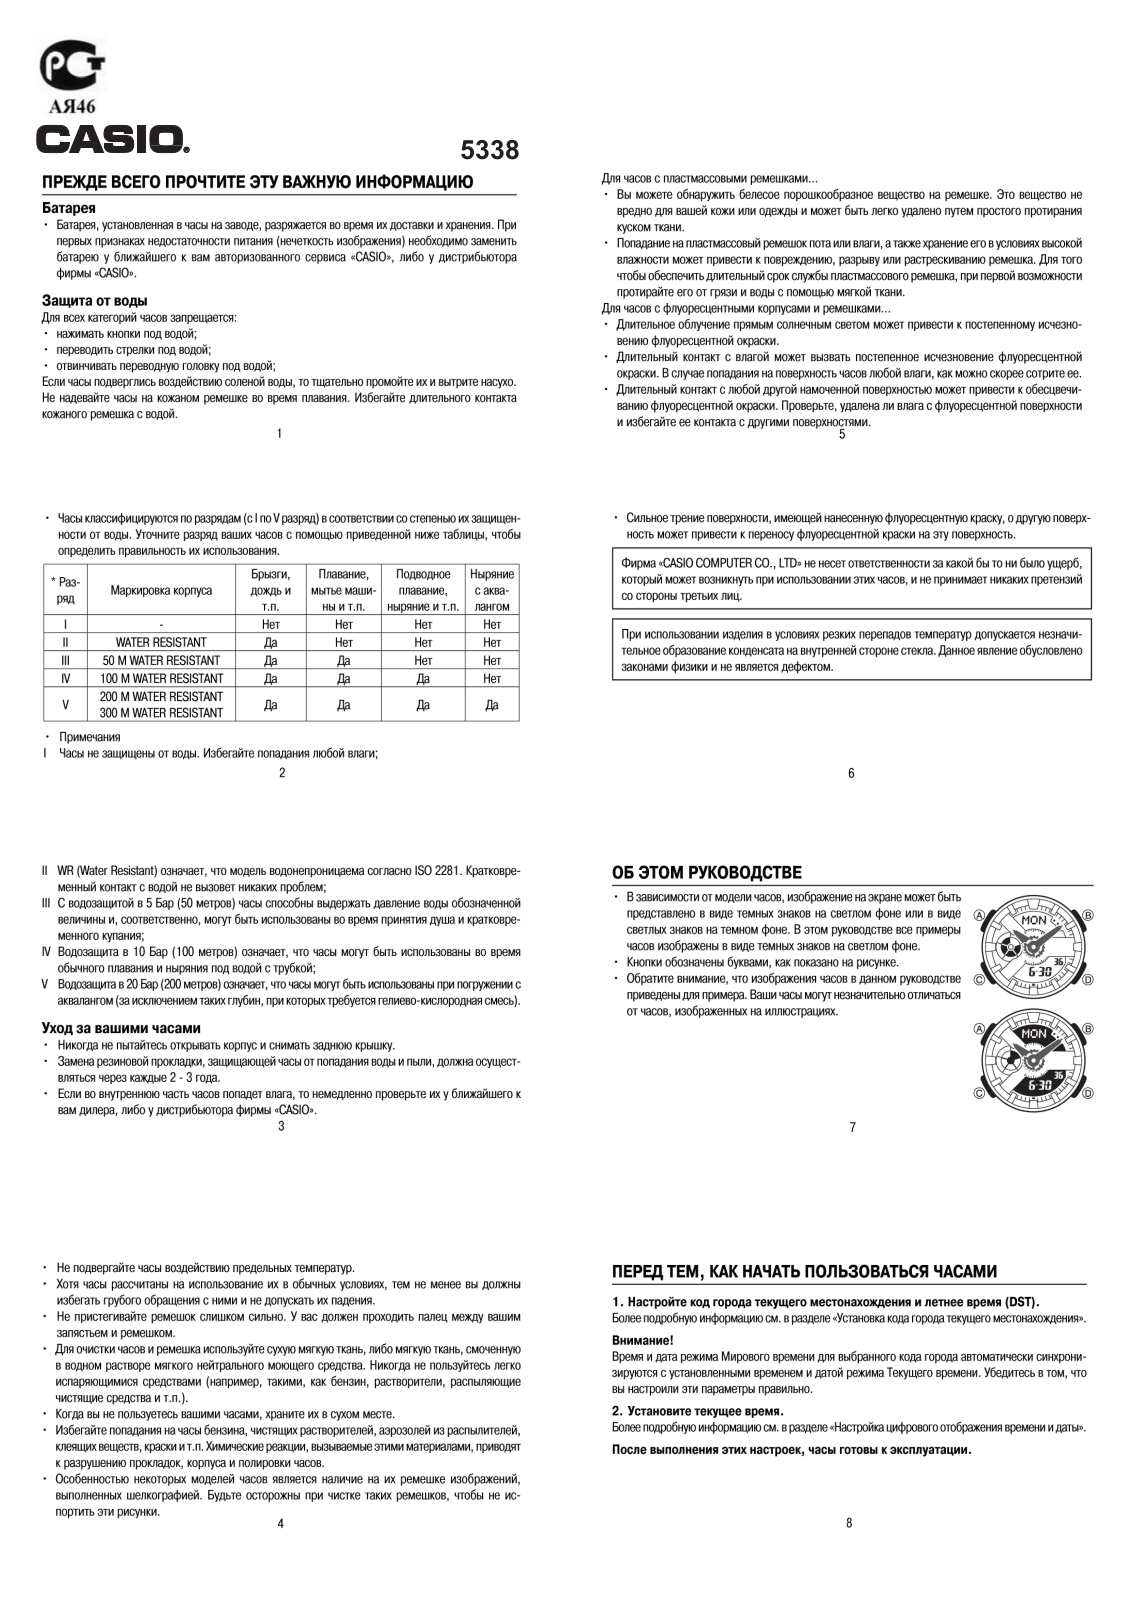 Casio BA-110CR-4A User Manual